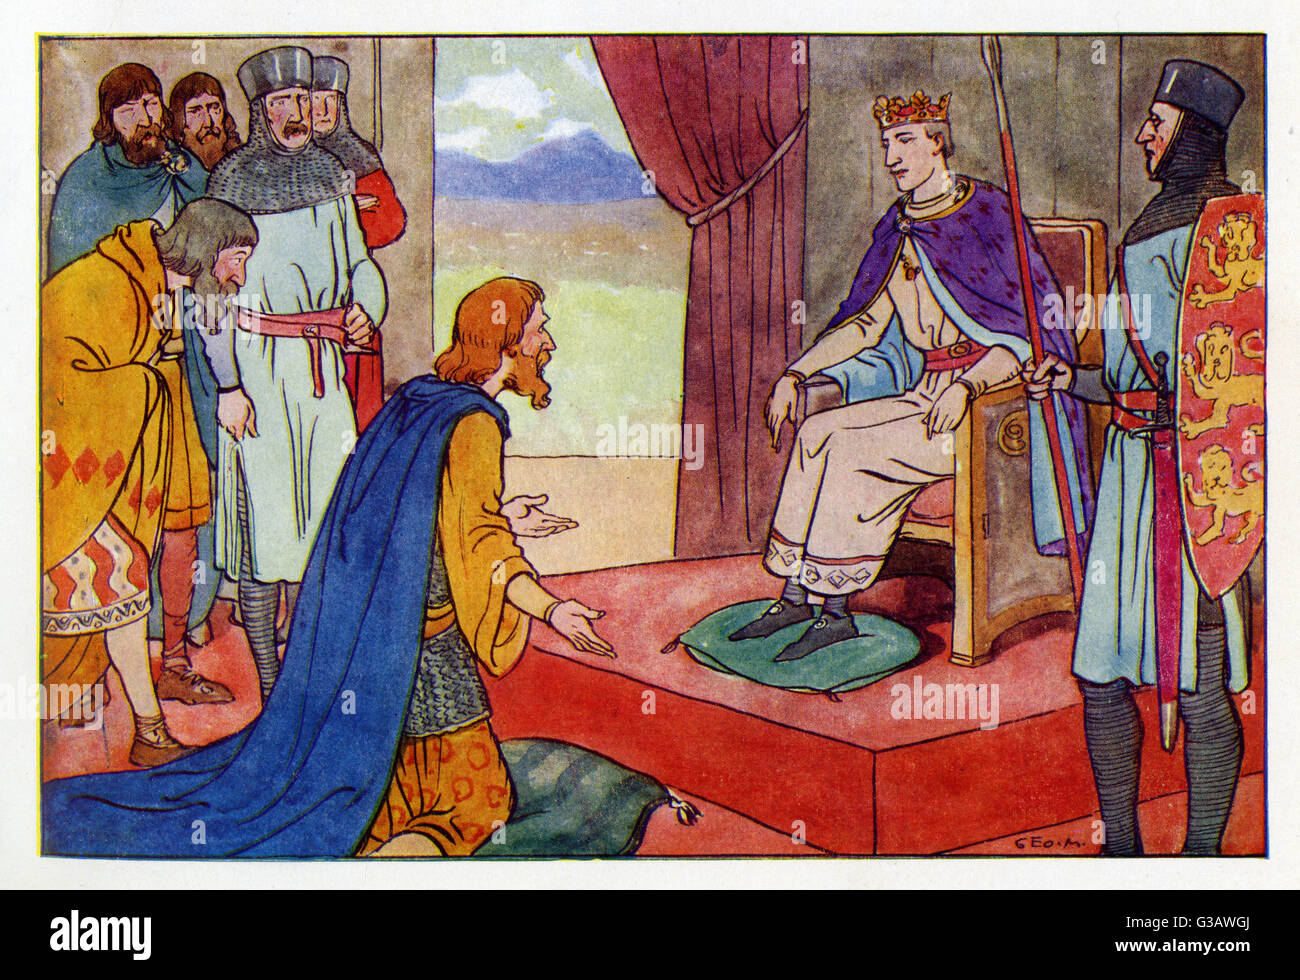 Die irischen Häuptlinge und Könige knien vor König Heinrich II. (1133-1189) in Dublin, Irland. Im Oktober 1171 landete König Heinrich mit einer großen Armee in Irland, um die Kontrolle über die Anglo-Normannen und die Iren zu erlangen. Die normannischen Lords übergaben Henry ihr erobertes Territorium. Stockfoto